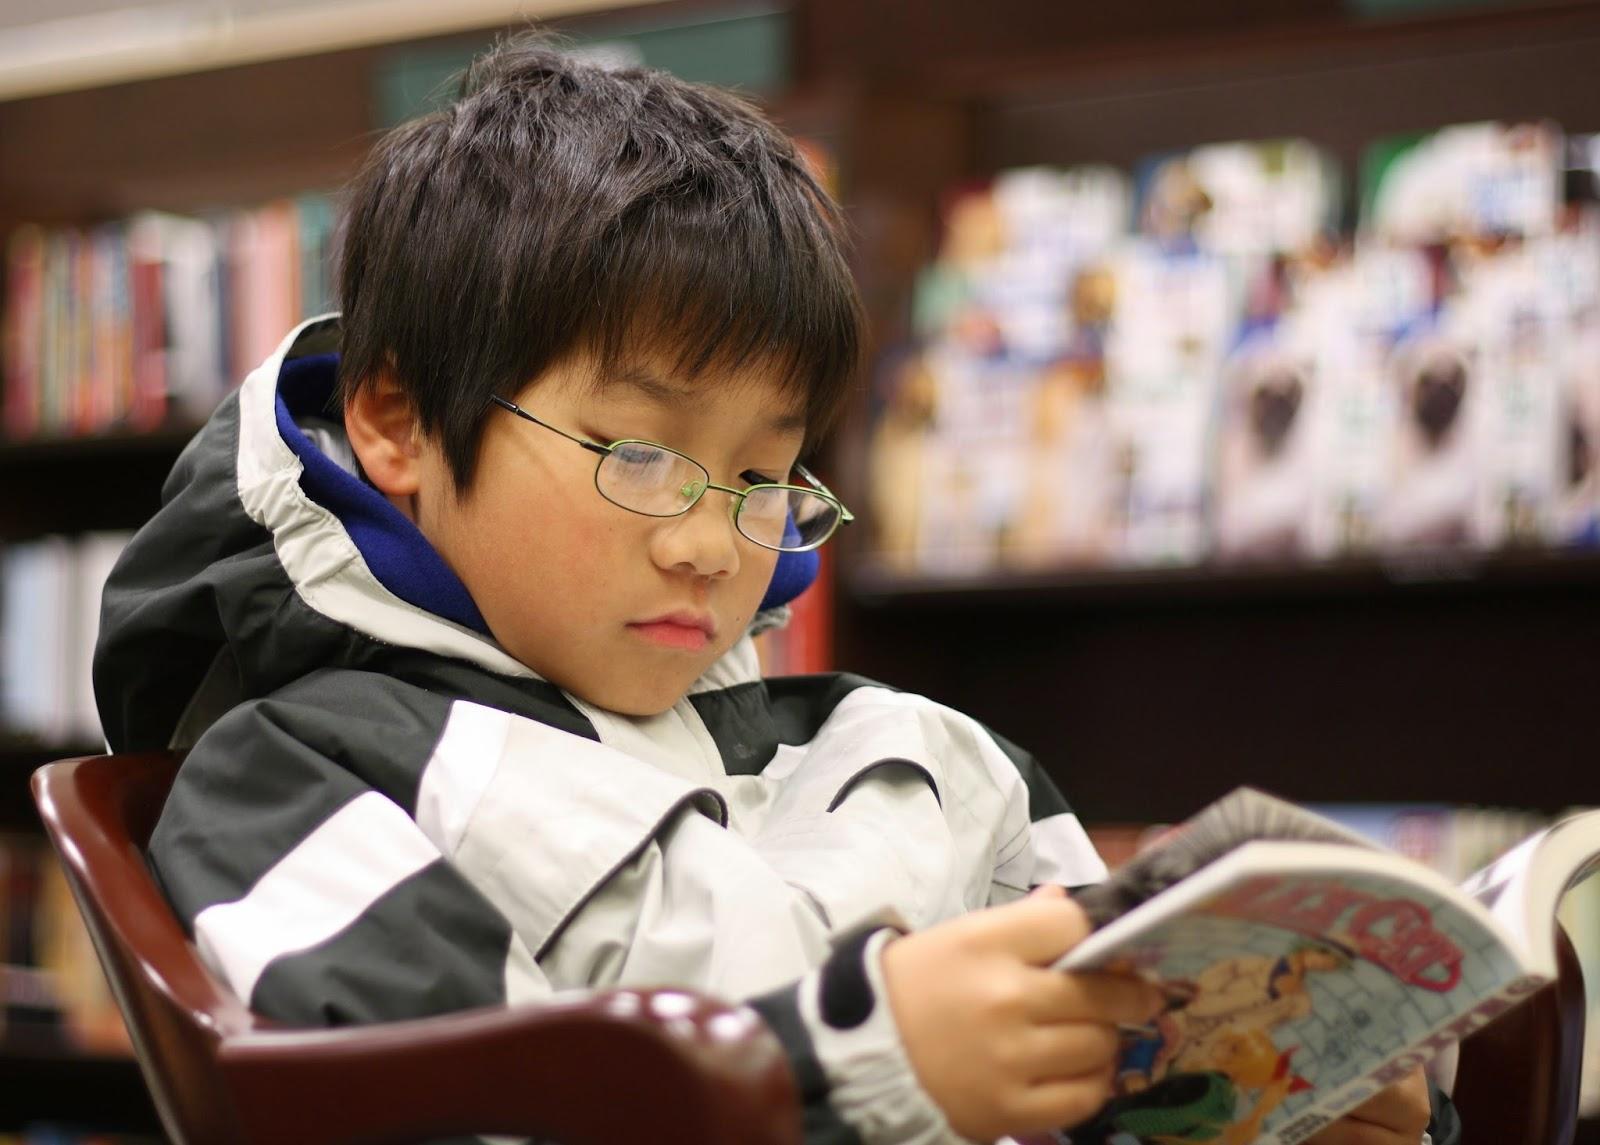 Young_boy_reading_manga - كيف يغير التعليم الصحيح العالم